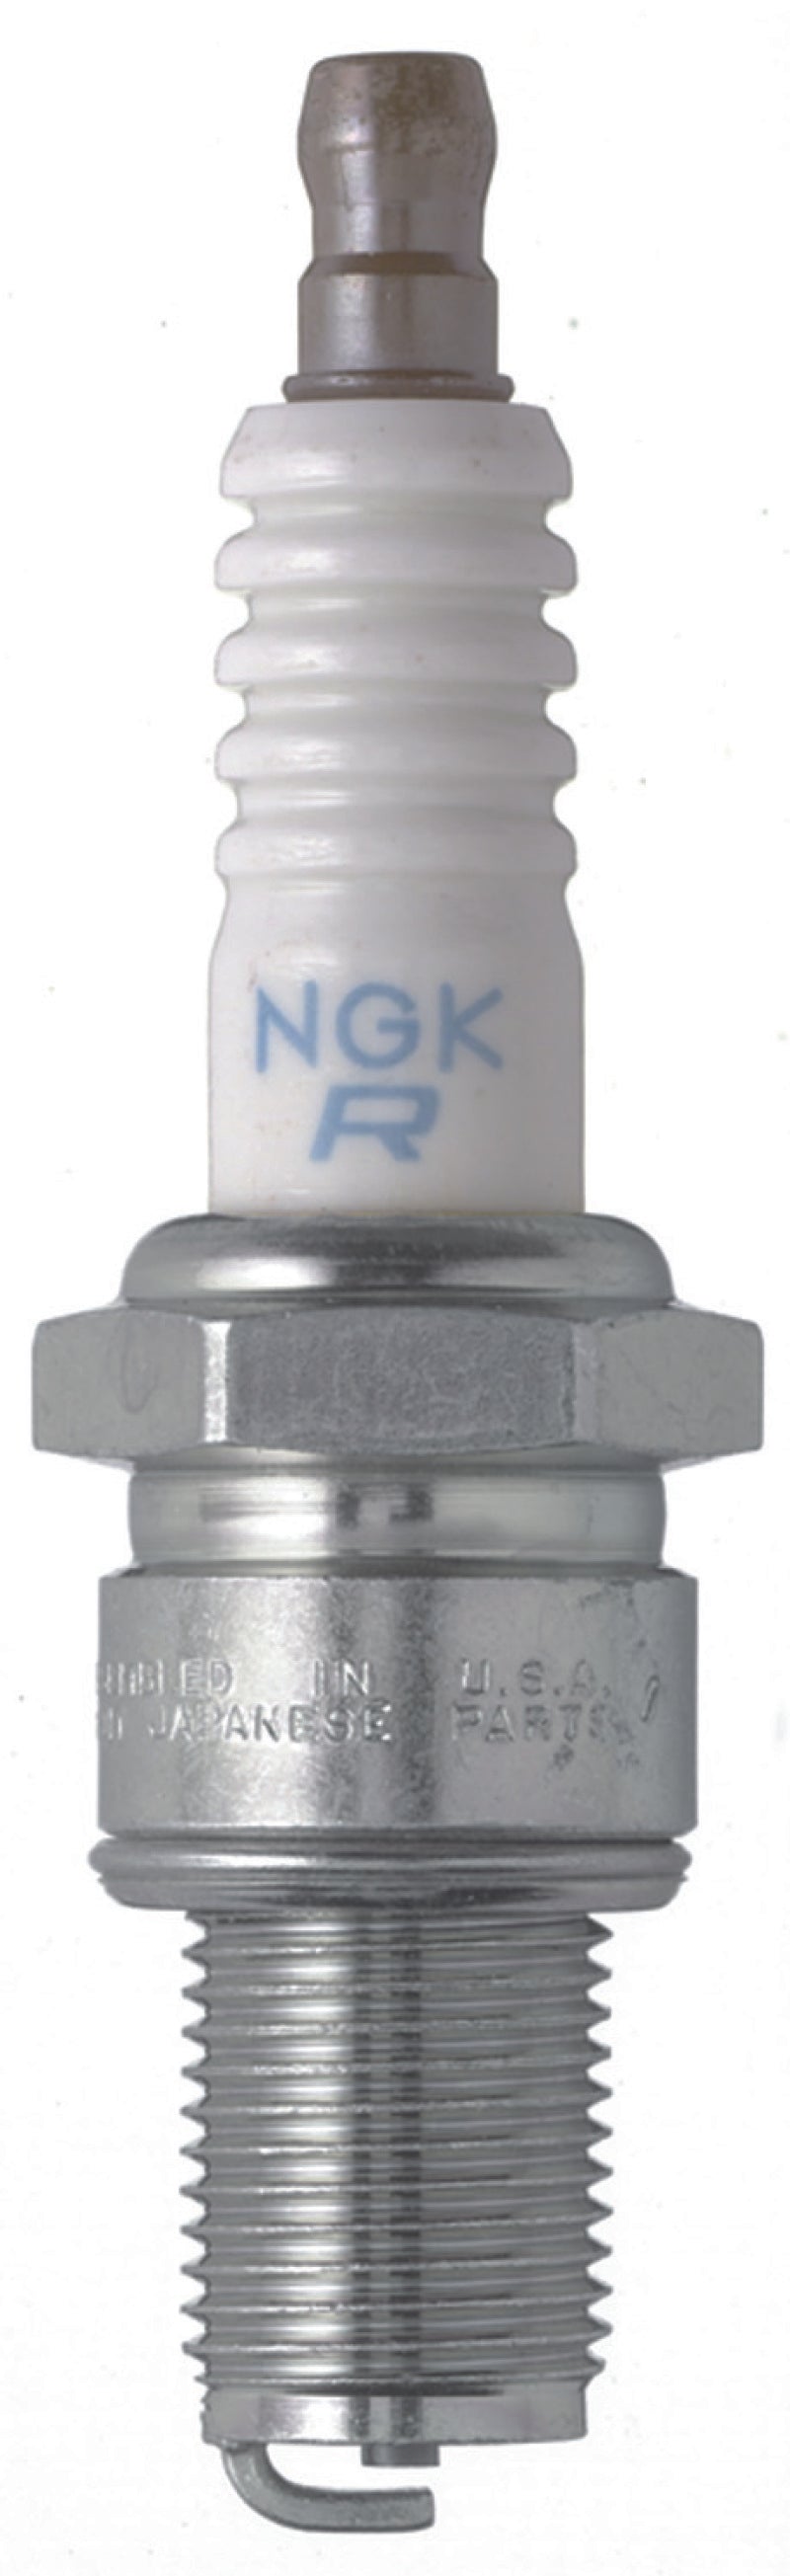 NGK Shop Pack Spark Plug Box of 25 (BR9ES)